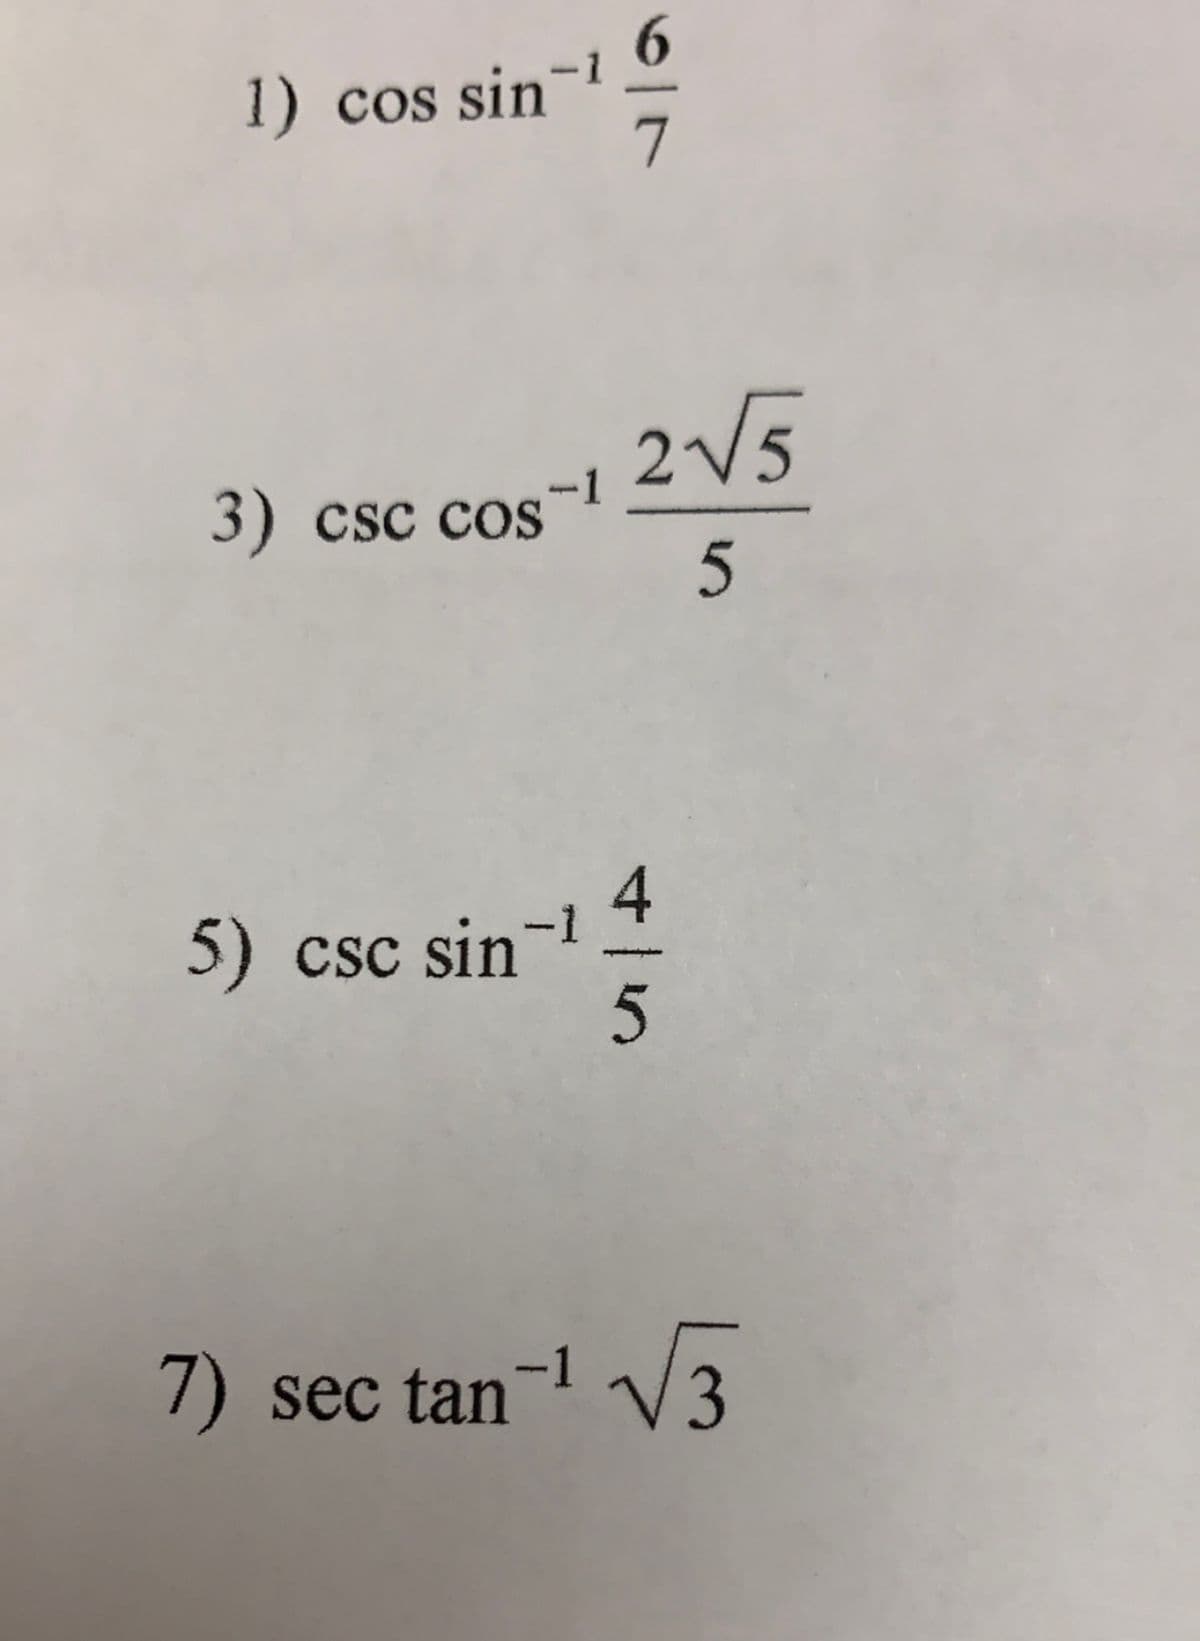 6.
1) cos sin
7
3) csc cos
2V5
-1
5) csc sin-
7) sec tan-1 v3
.
4/5
